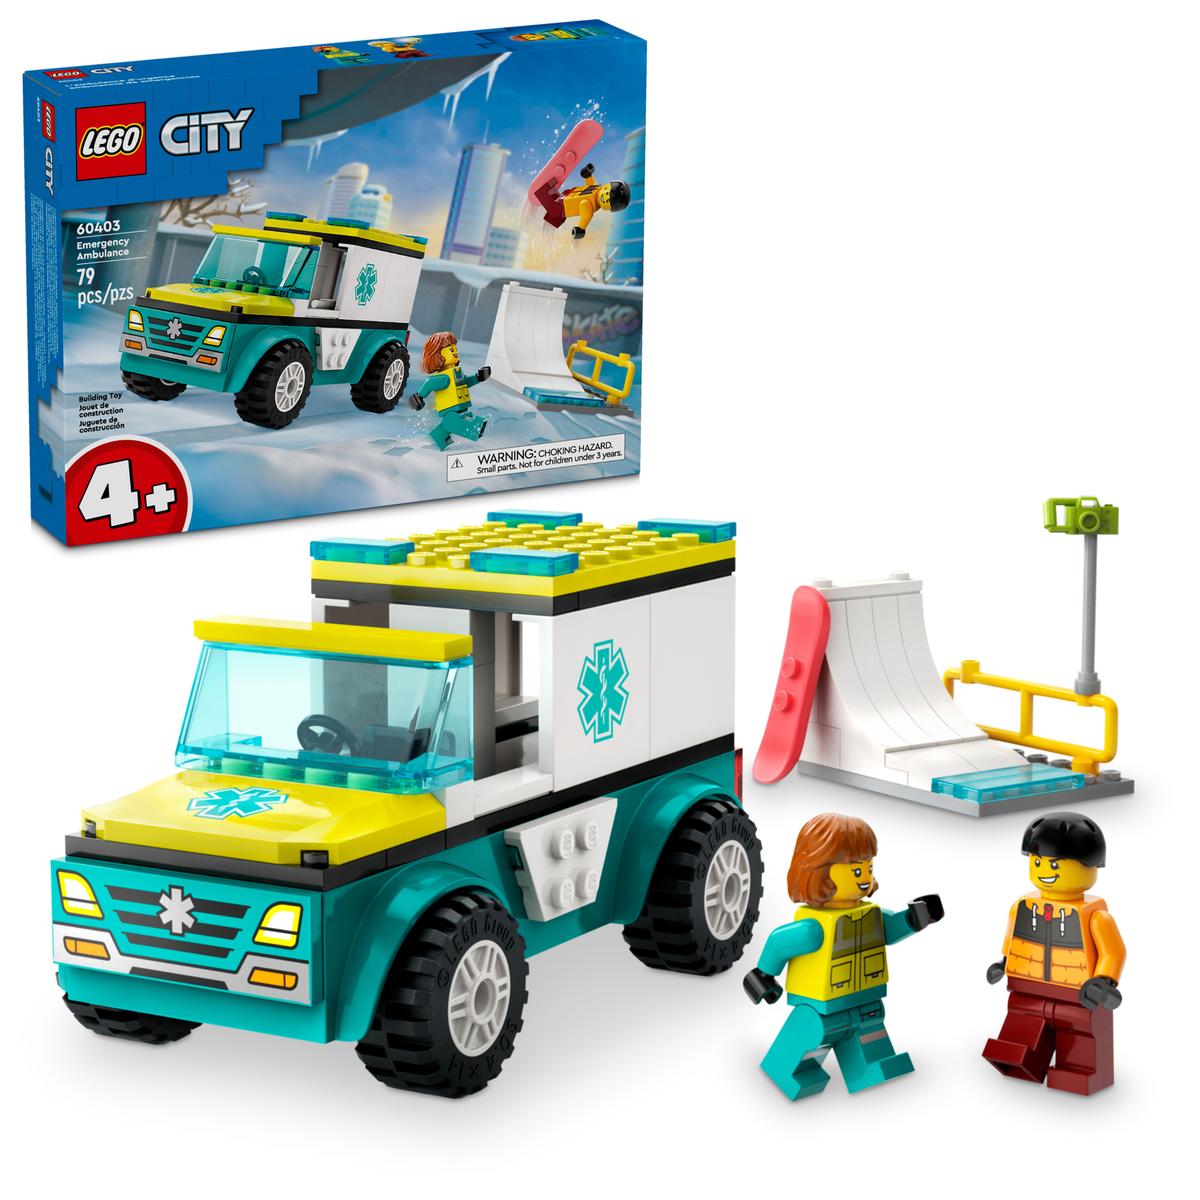 Lego City 60403 - Rettungswagen und Snowboarder